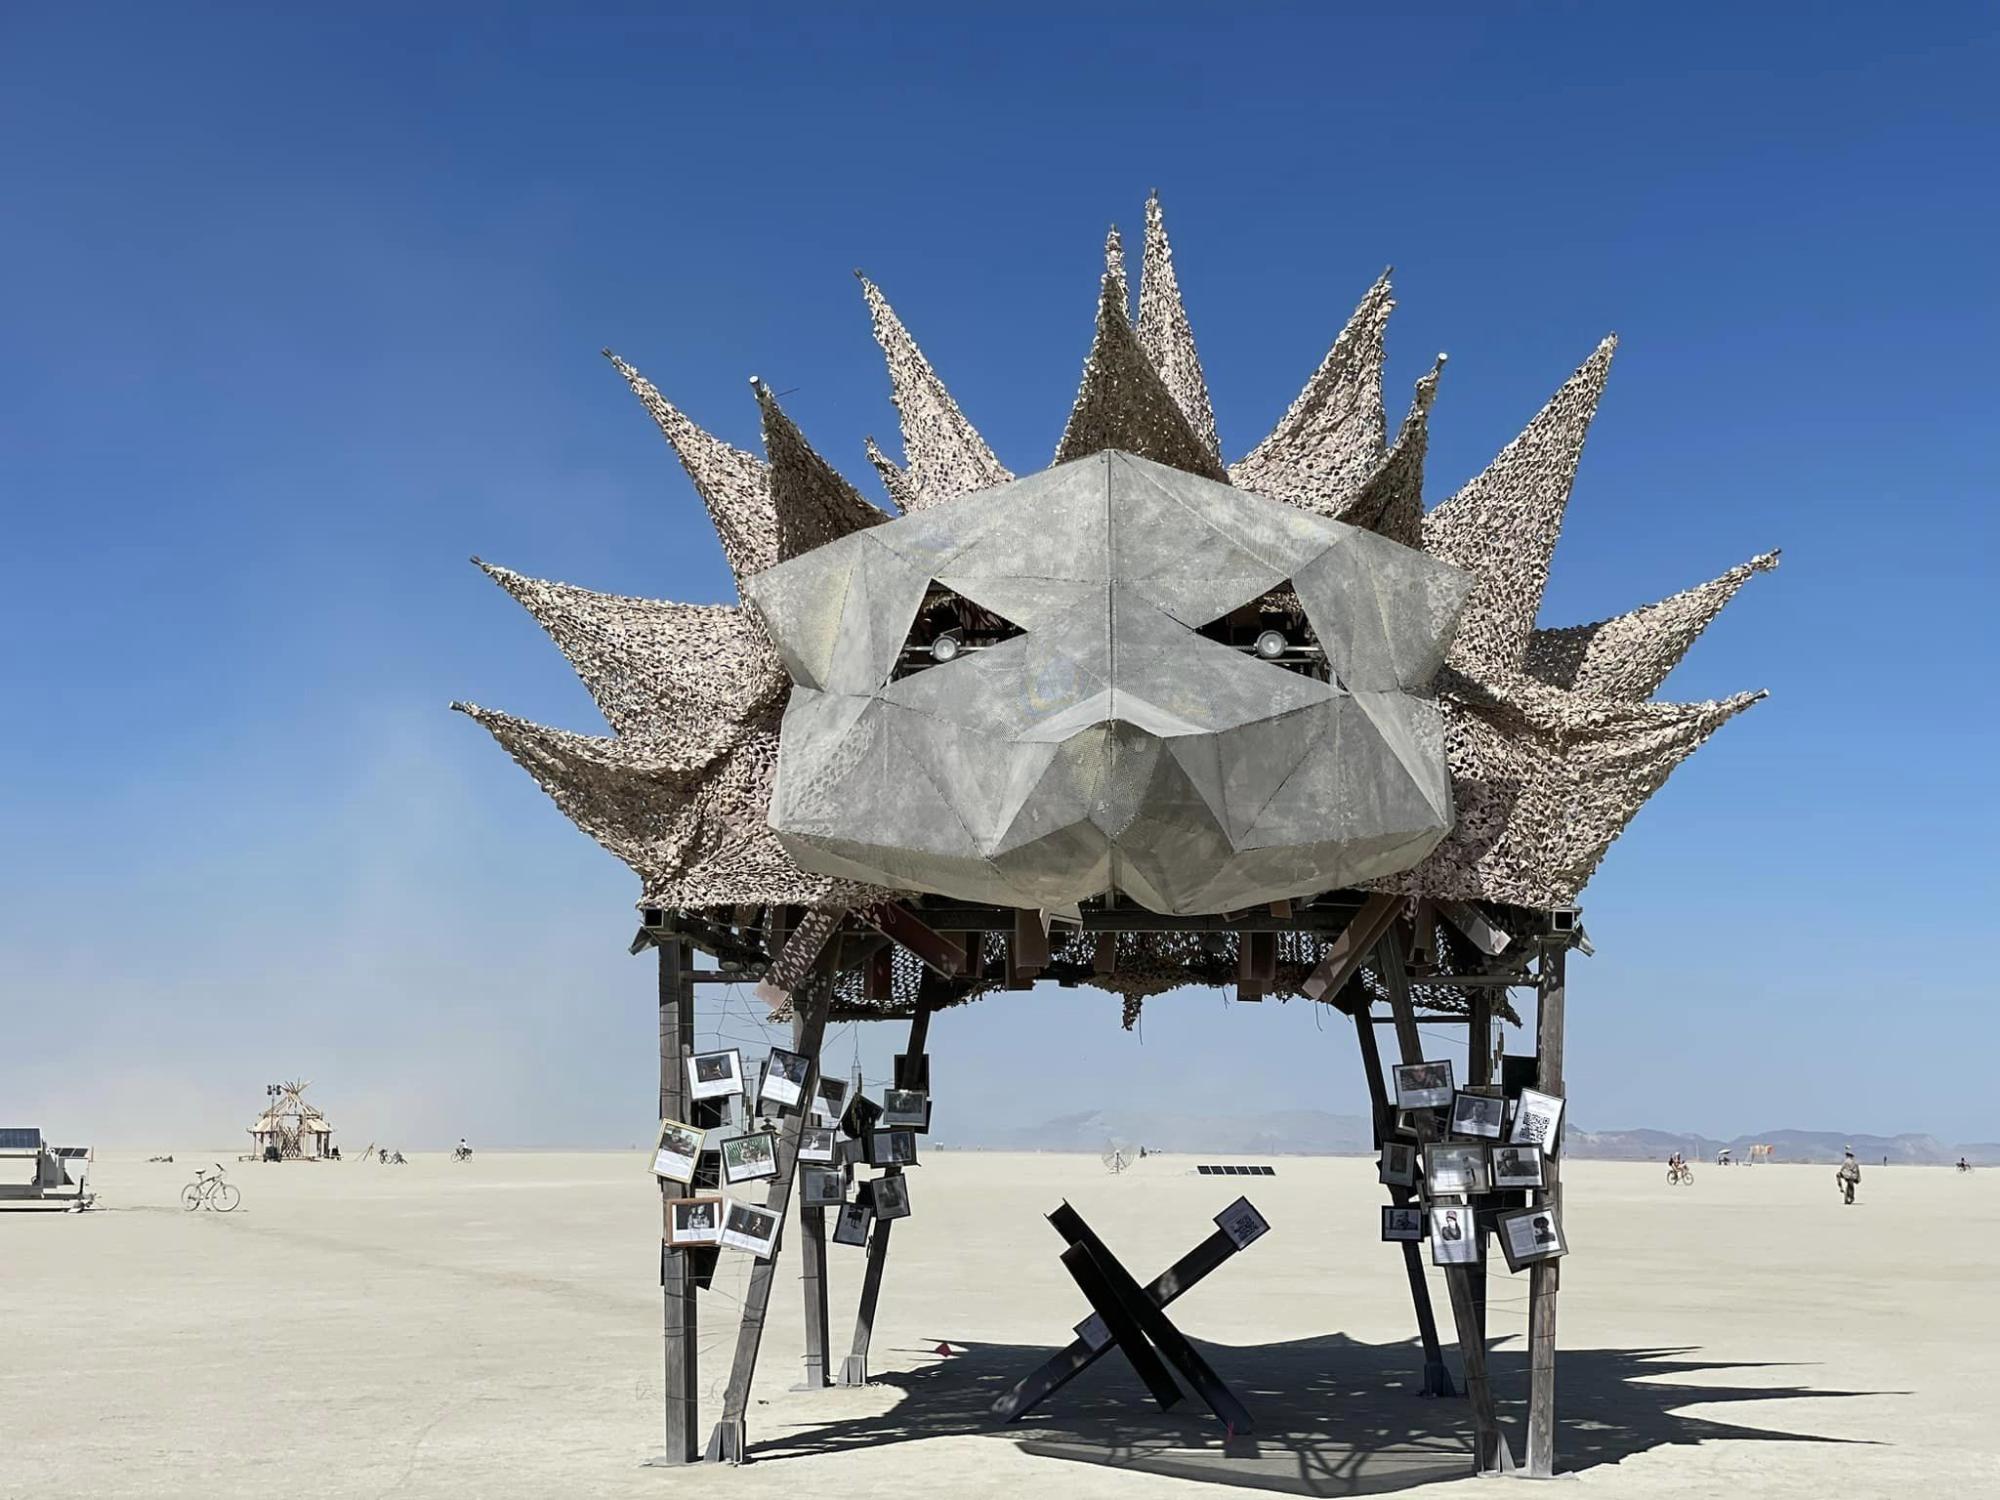 Українці створили скульптуру із протитанкових їжаків на фестивалі Burning man у США (фото) фото 1